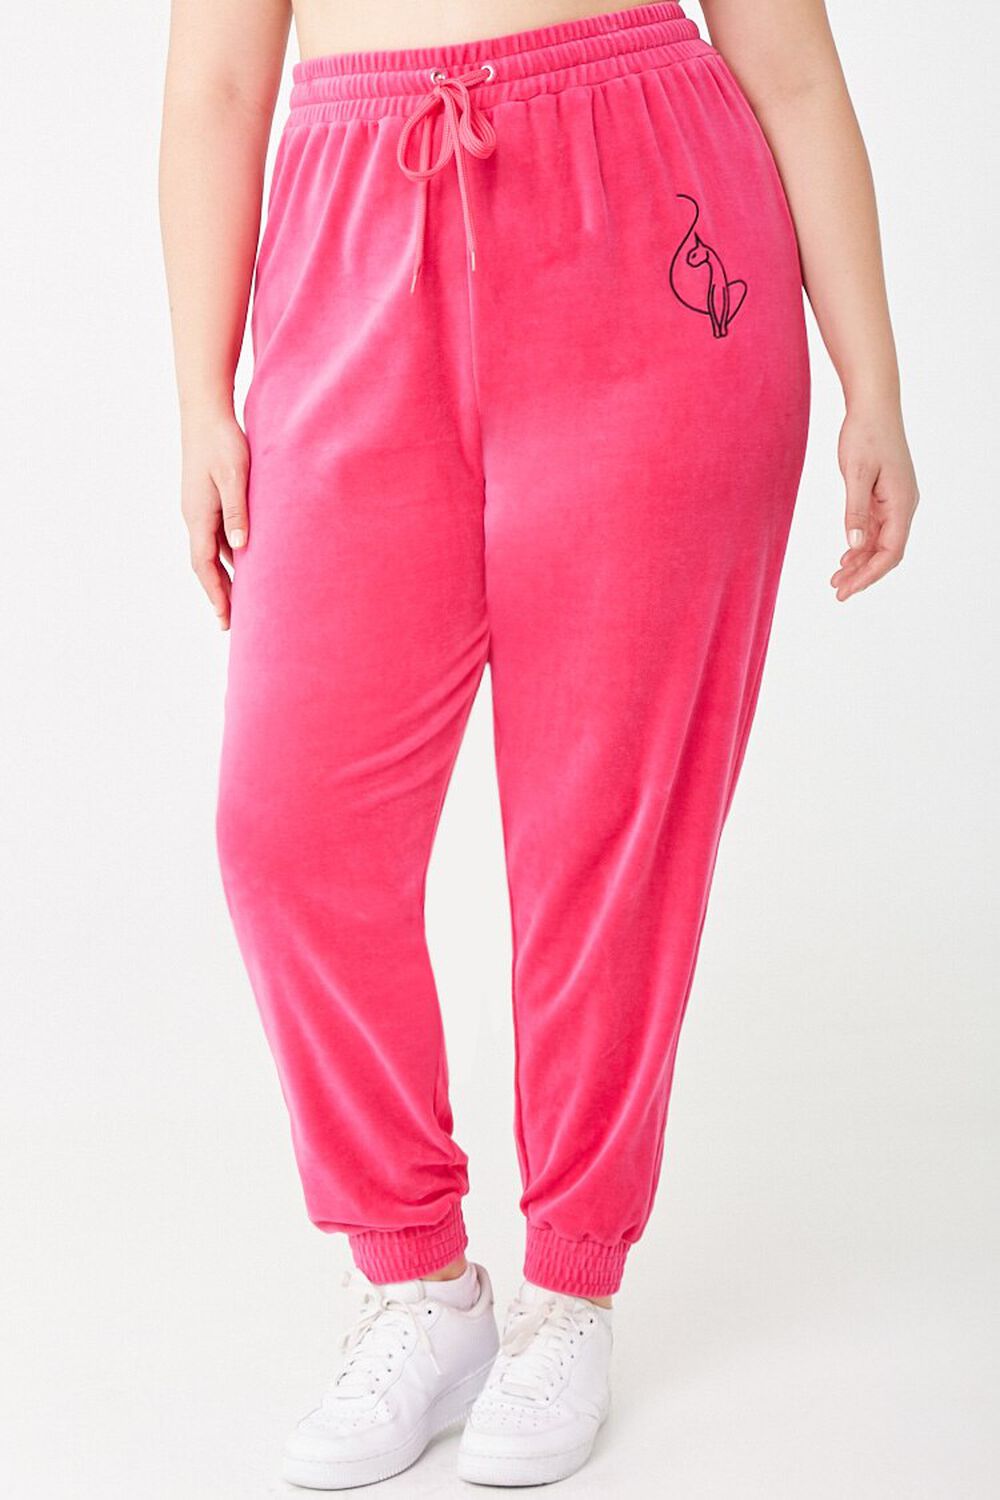 PINK Victoria's Secret, Pants & Jumpsuits, Love Pink Sweatpants